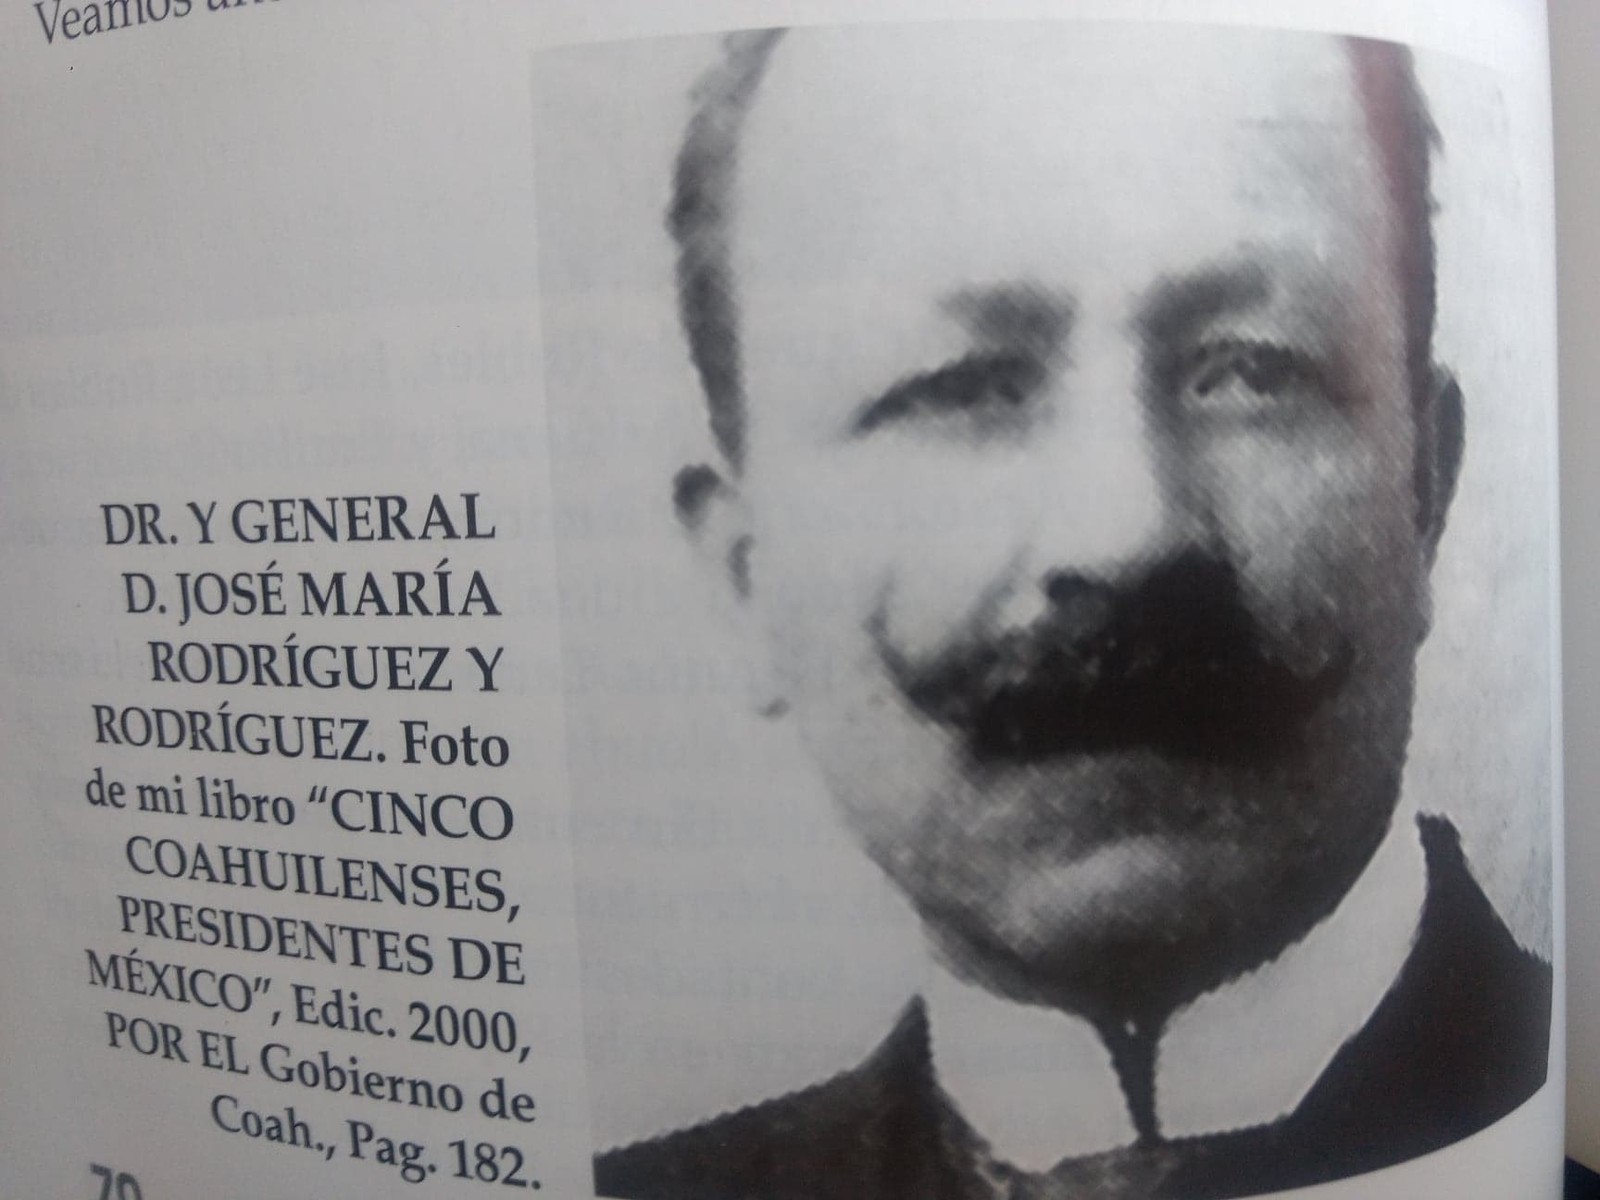 Foto del Gral. y Doctor don José María Rodríguez y Rodríguez,
que aparece en la página 70 de mi libro: “Fundación y desarrollo: la aduana de Torreón, Coahuila, 1948-2007”. (CORTESÍA) 
